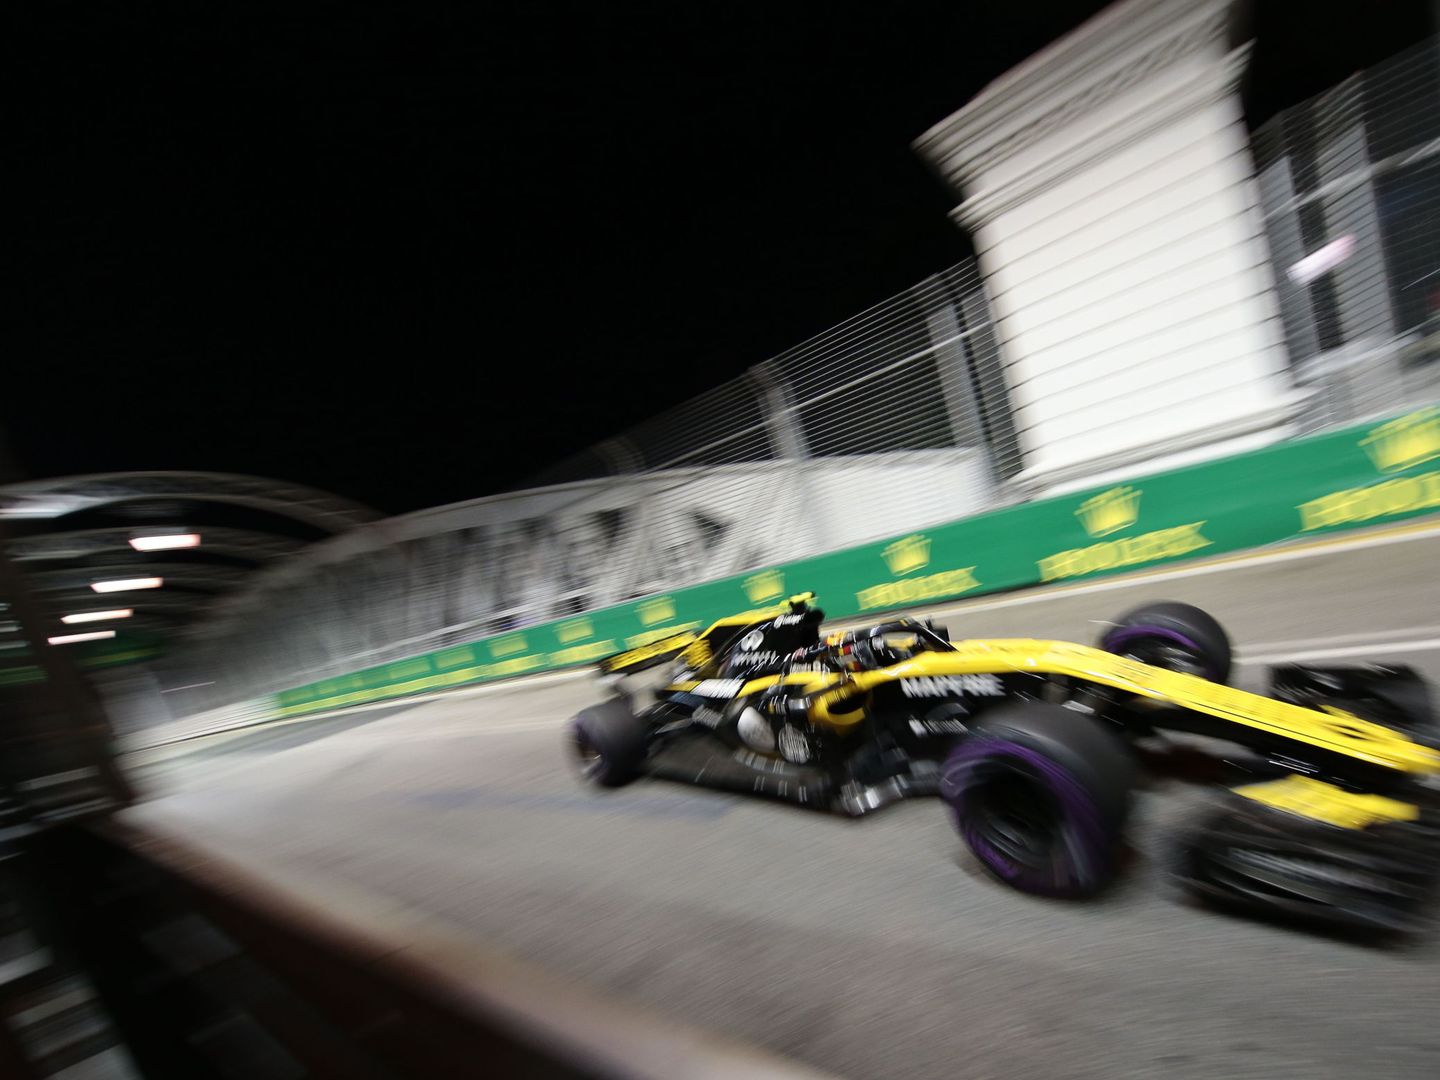 Carlos Sainz durante el Gran Premio de Singapur. (EFE)